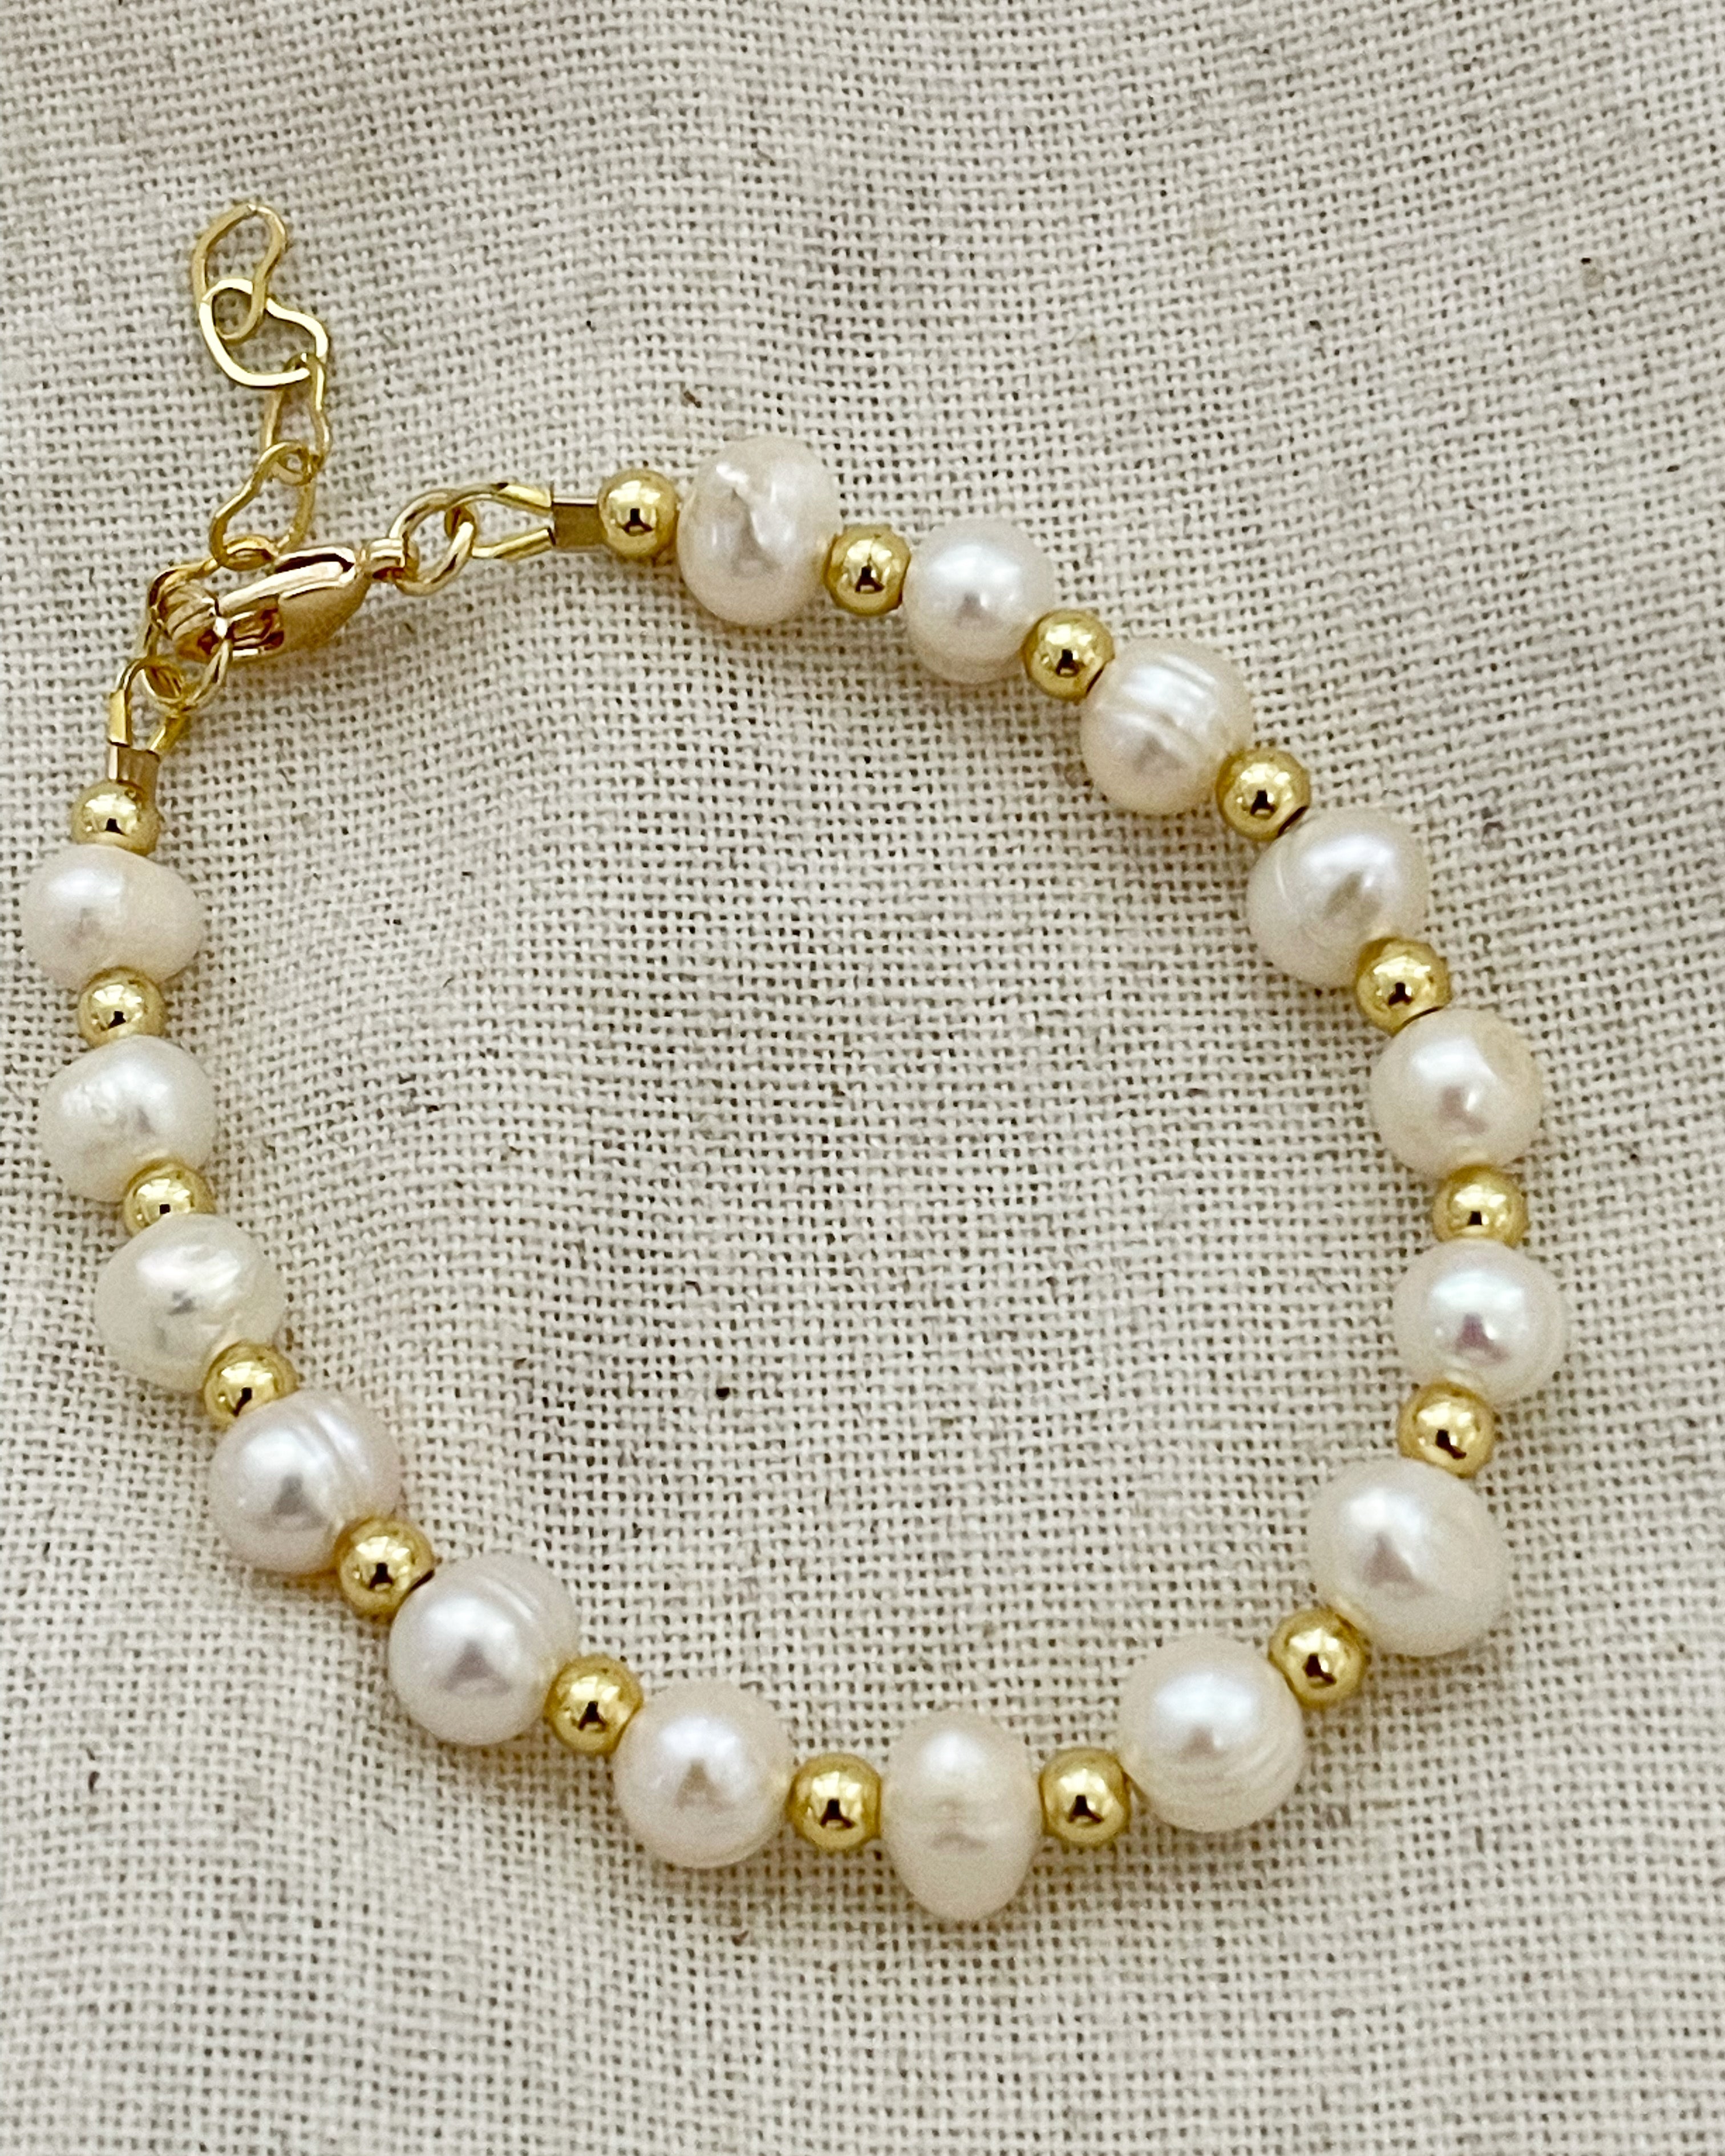 Pearl Bracelets